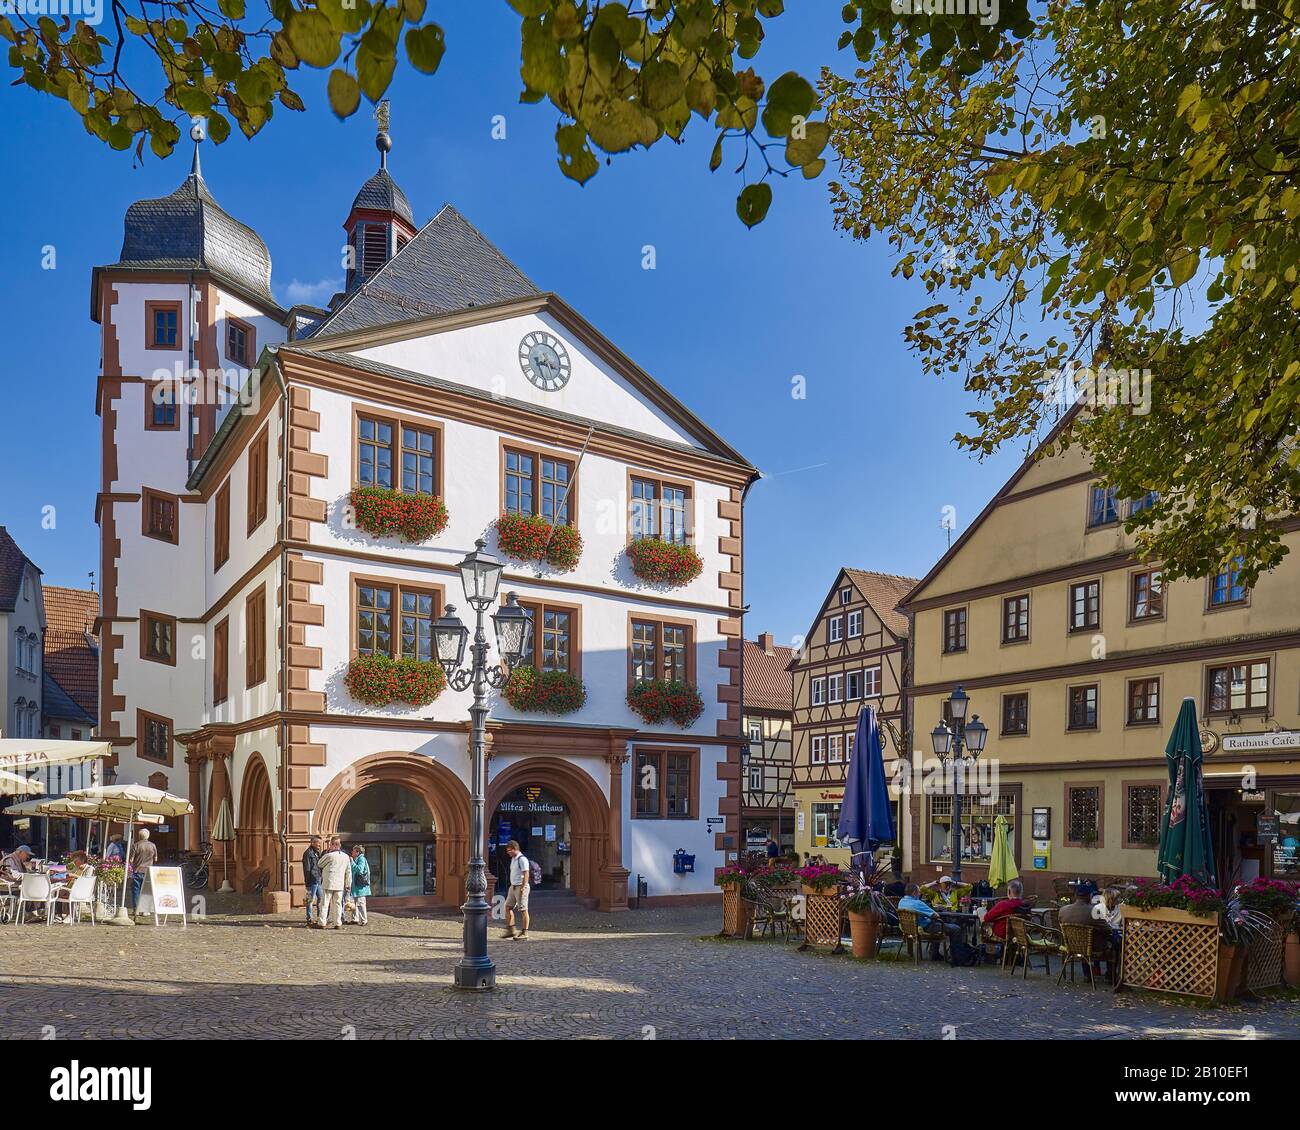 Marktplatz mit Rathaus in der Altstadt, Lohr am Main, Unterfranken, Bayern, Deutschland Stockfoto